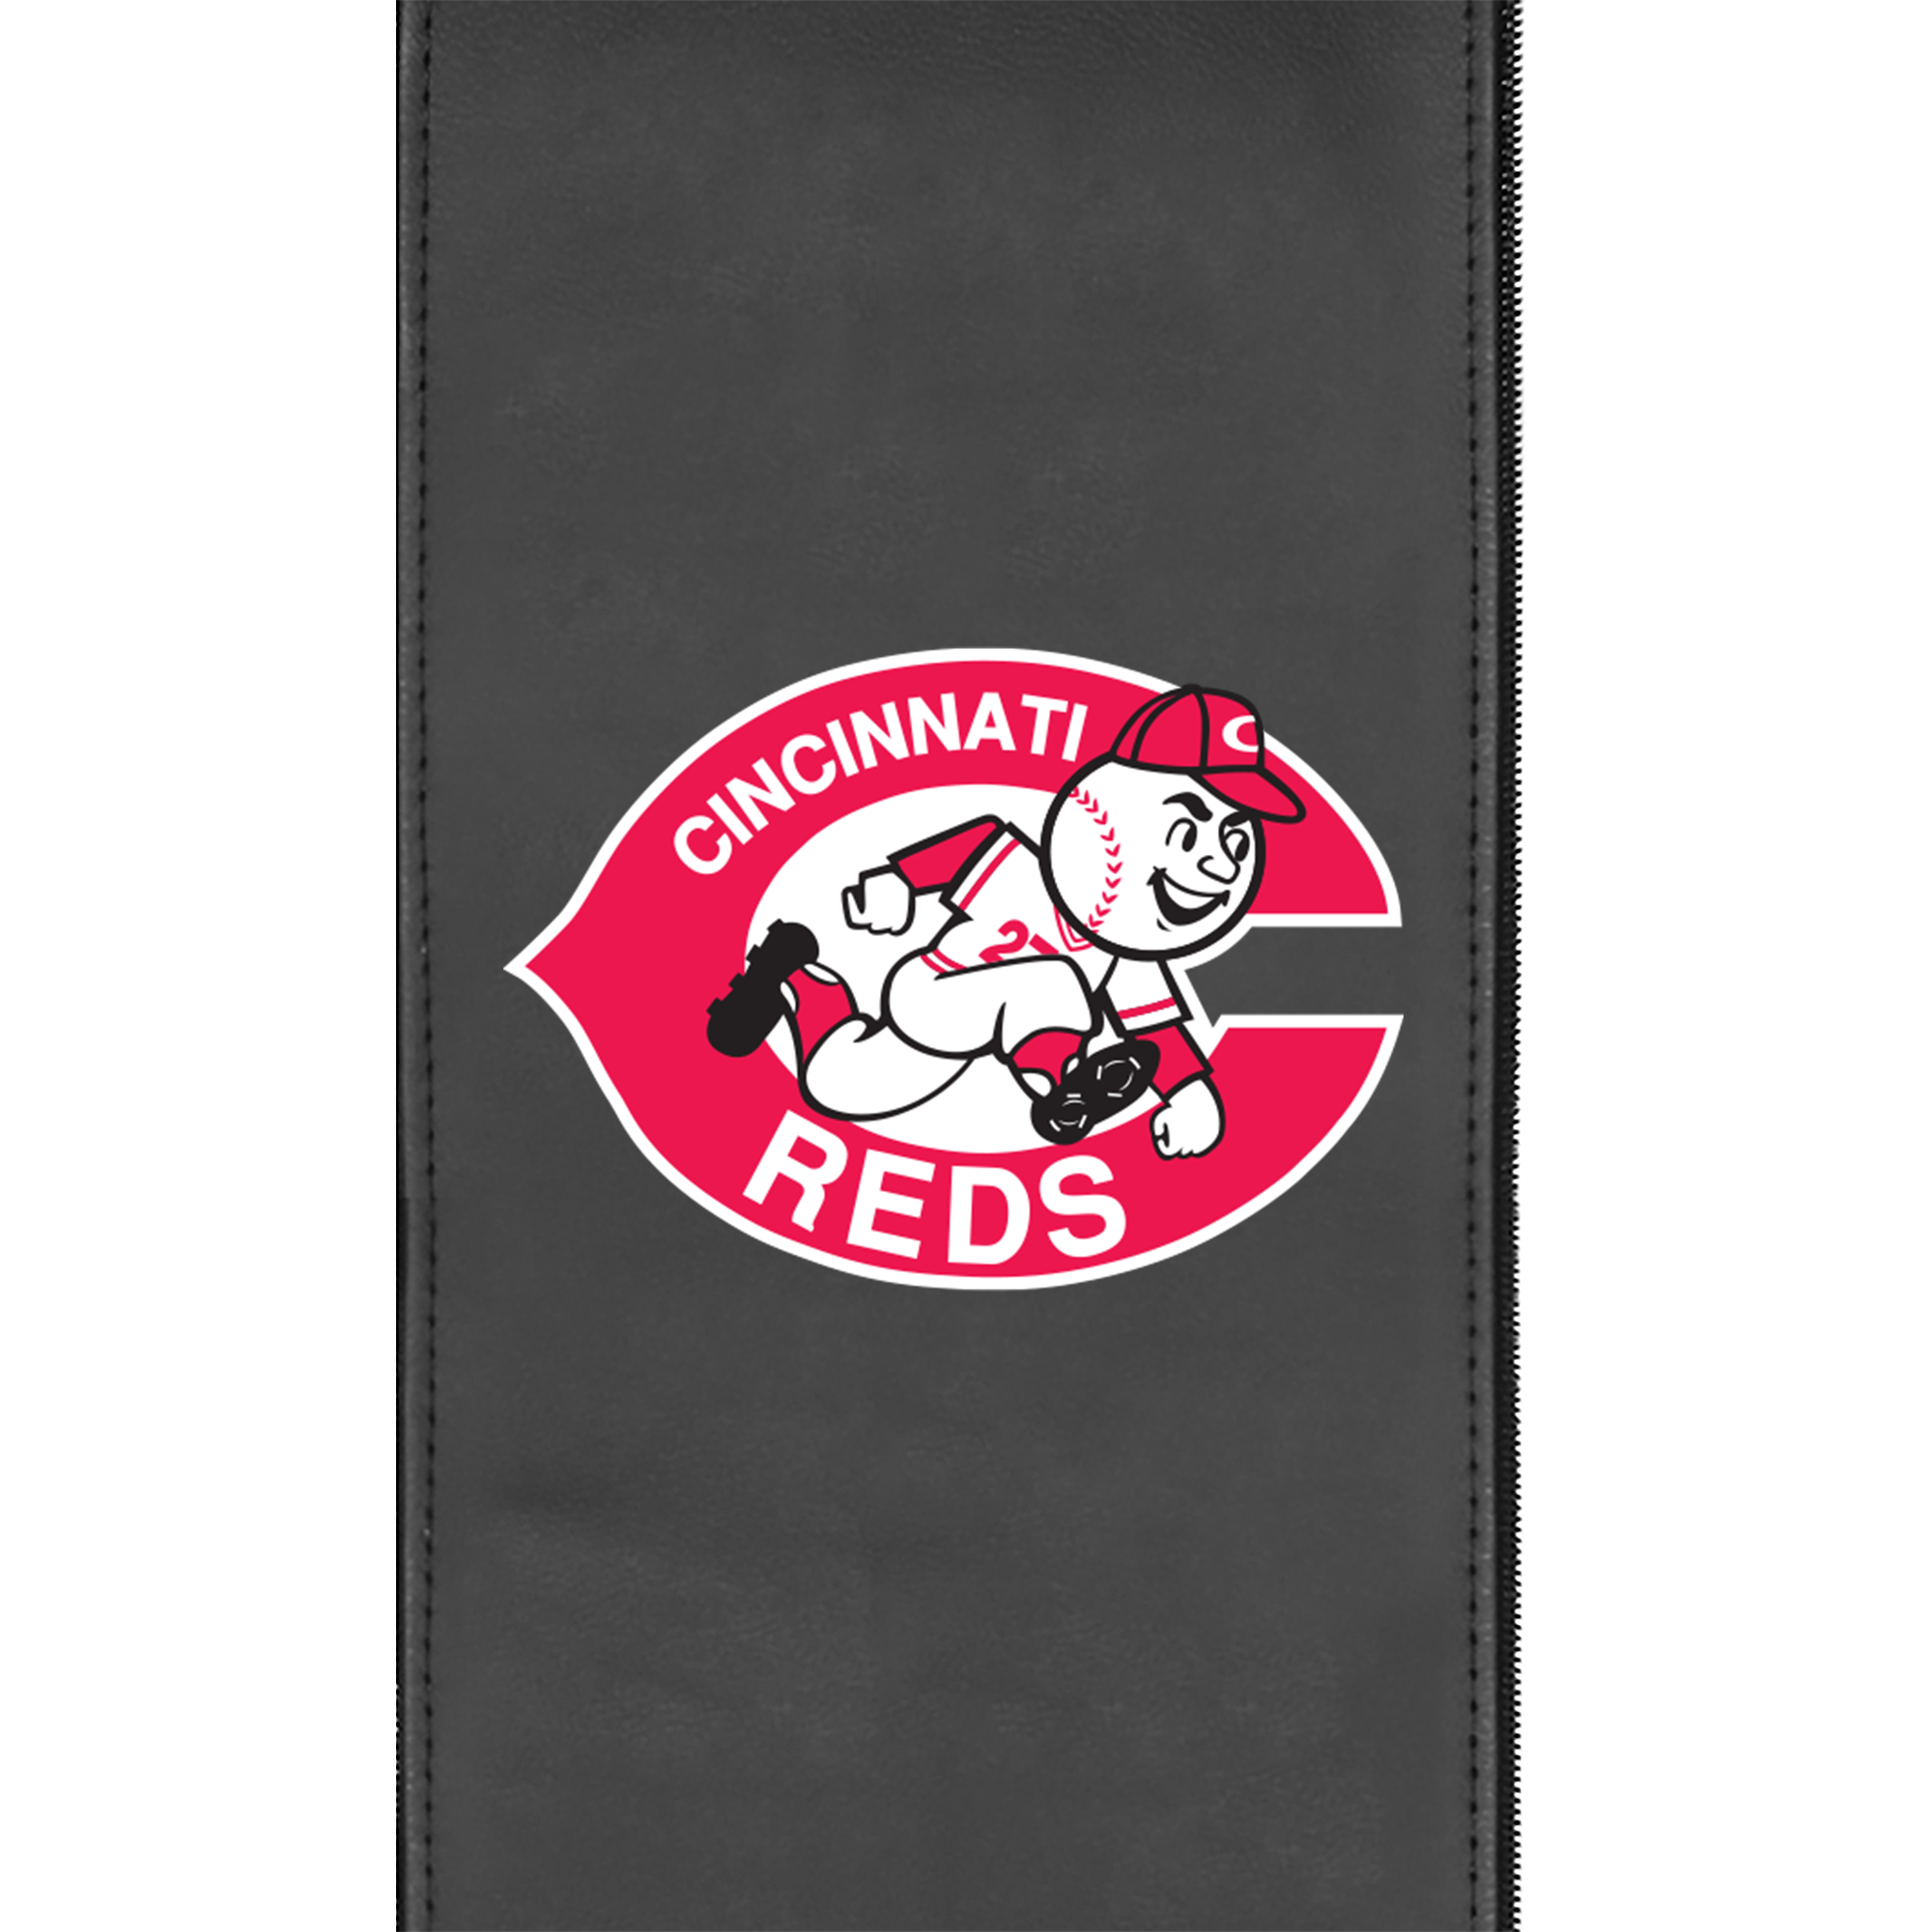 Game Rocker 100 with Cincinnati Reds Cooperstown Logo